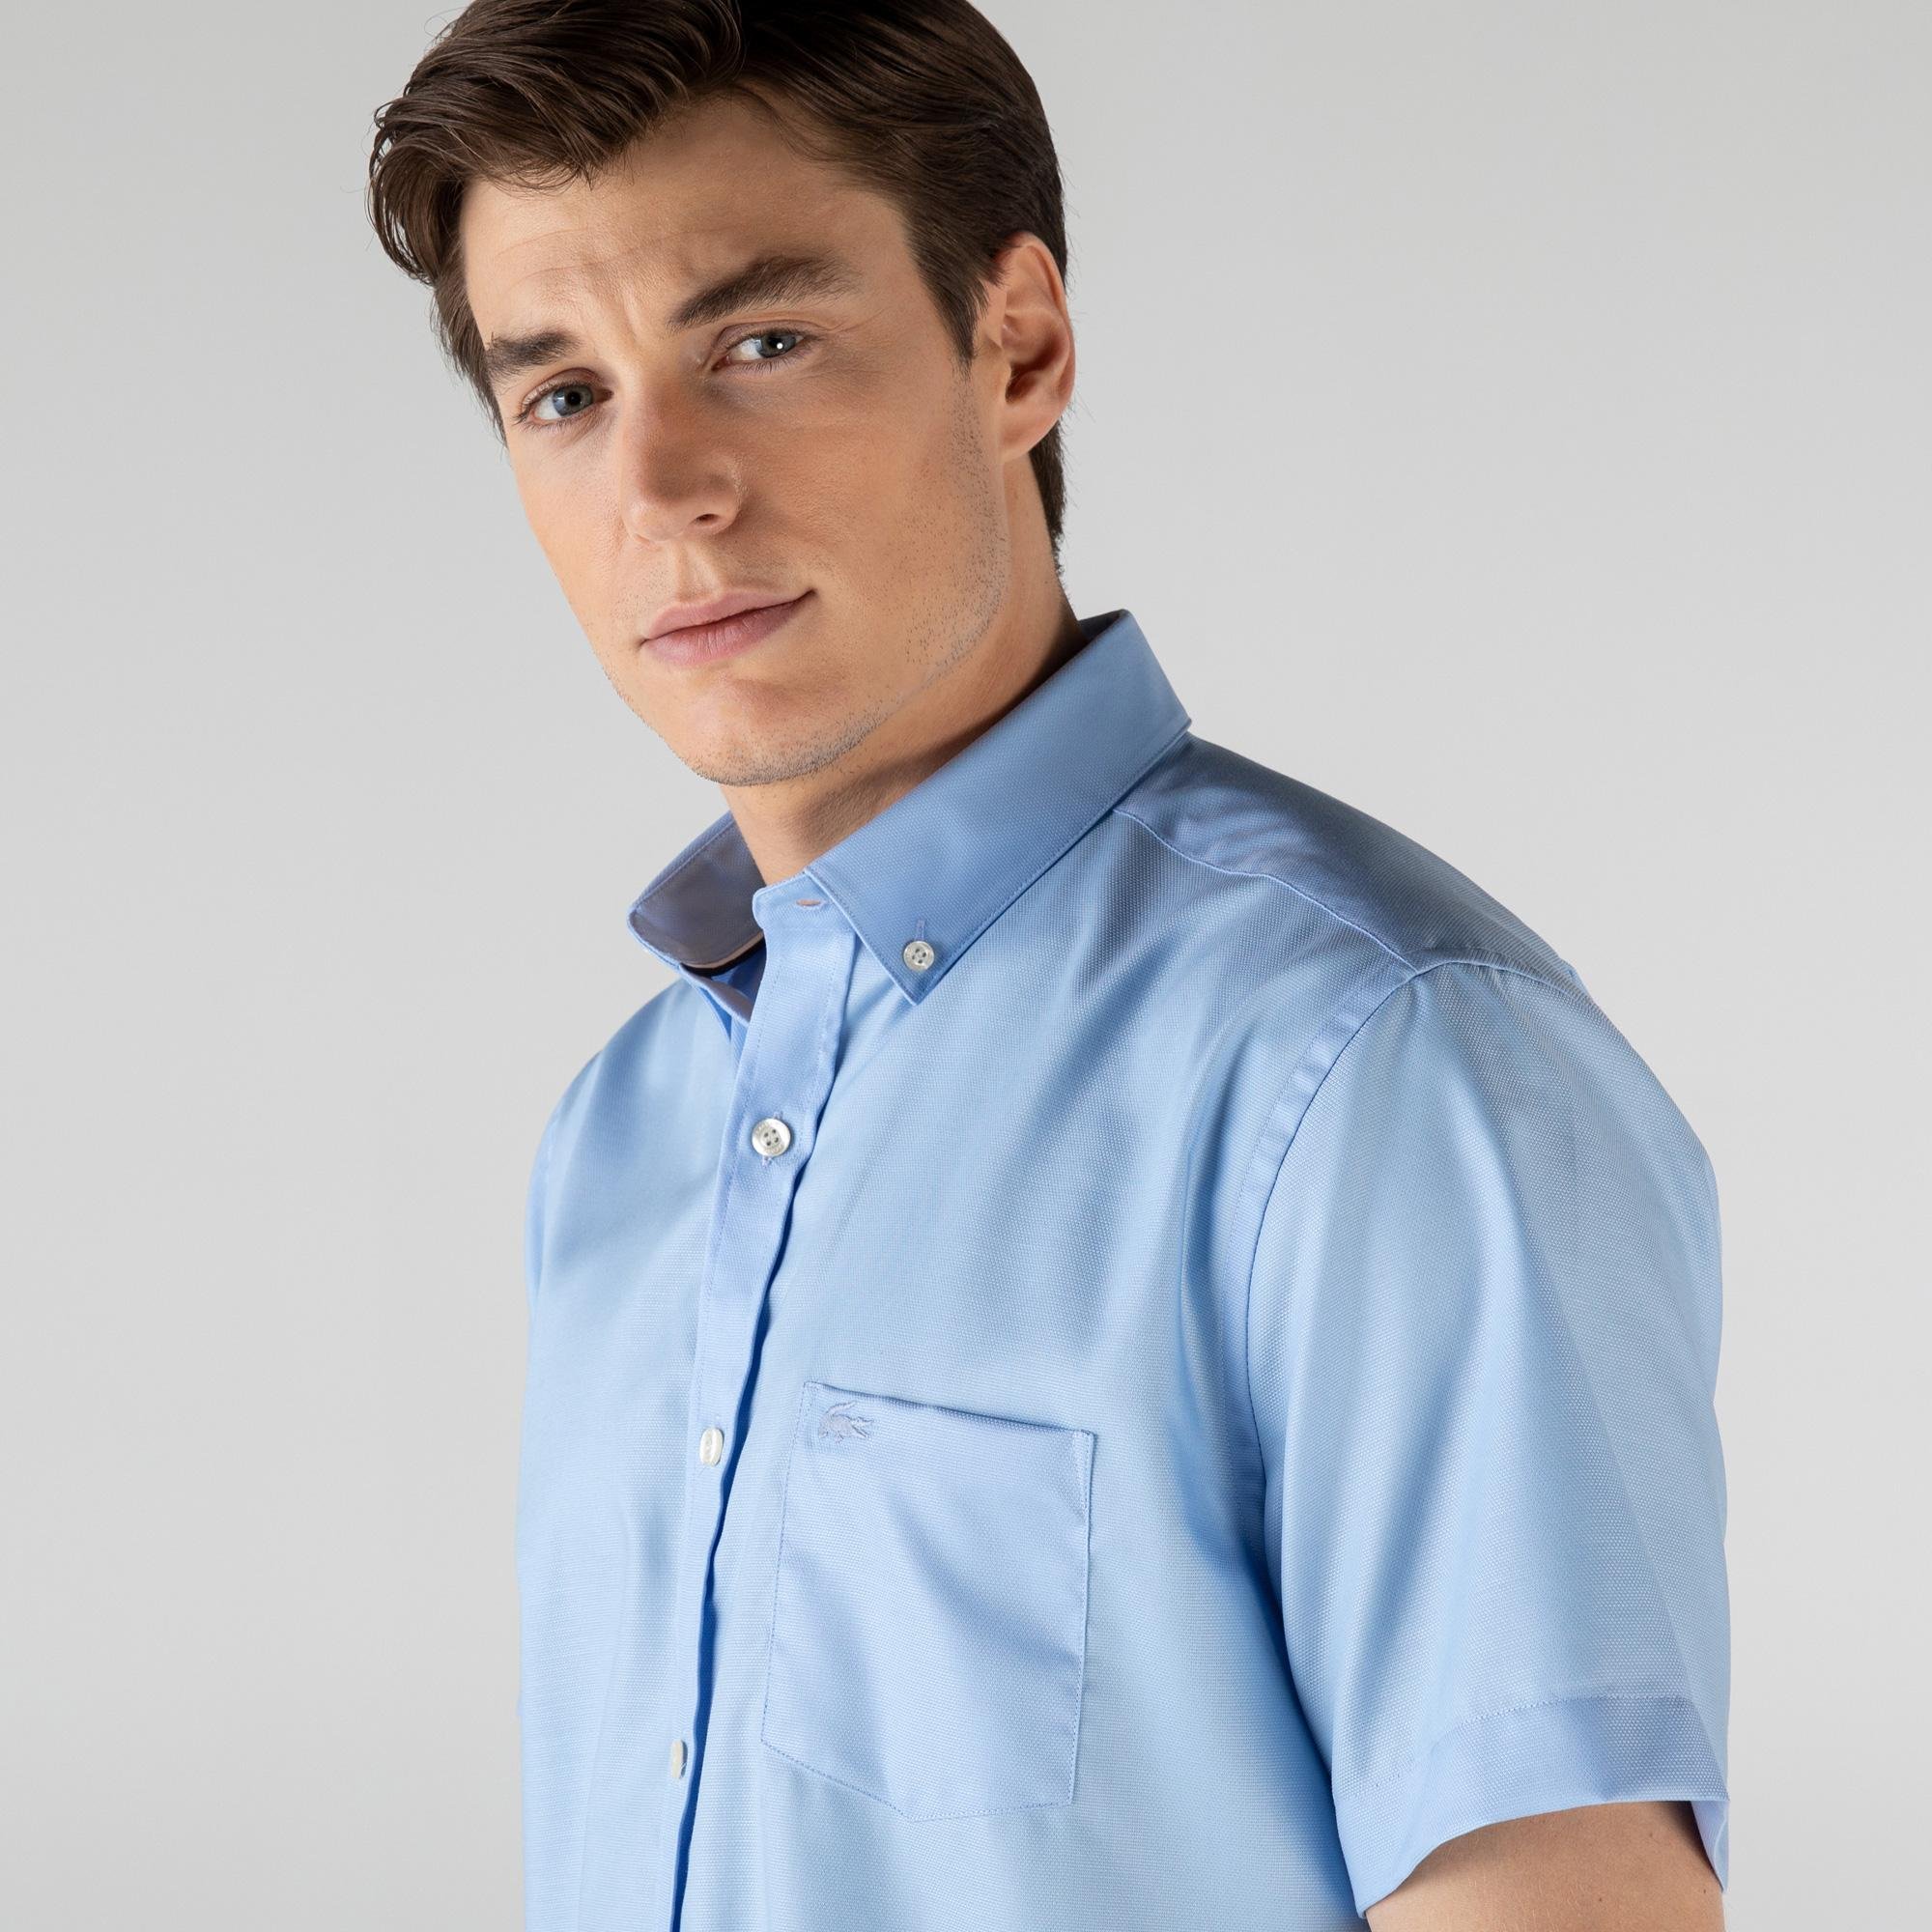 Lacoste Erkek Regular Fit Kısa Kollu Açık Mavi Gömlek